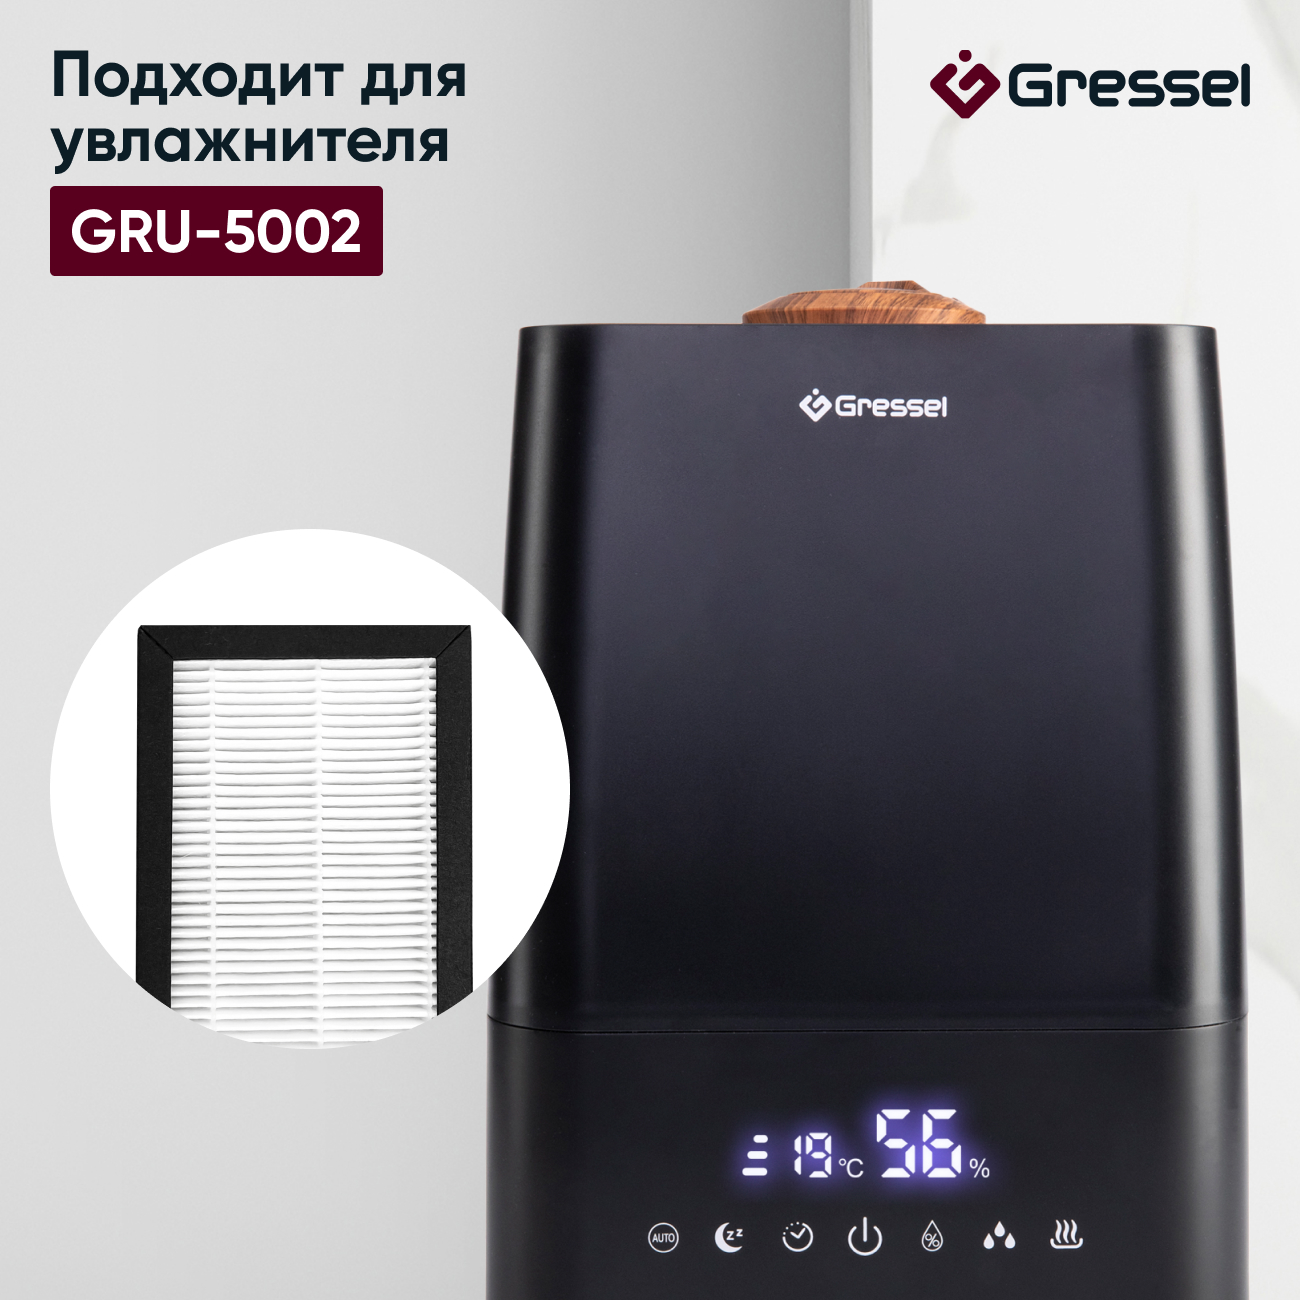 HEPA фильтр увлажнителя воздуха Gressel G-5003 для модели GRU-5002 фильтр увлажнителя воздуха gressel g 5002 для модели gru 5002